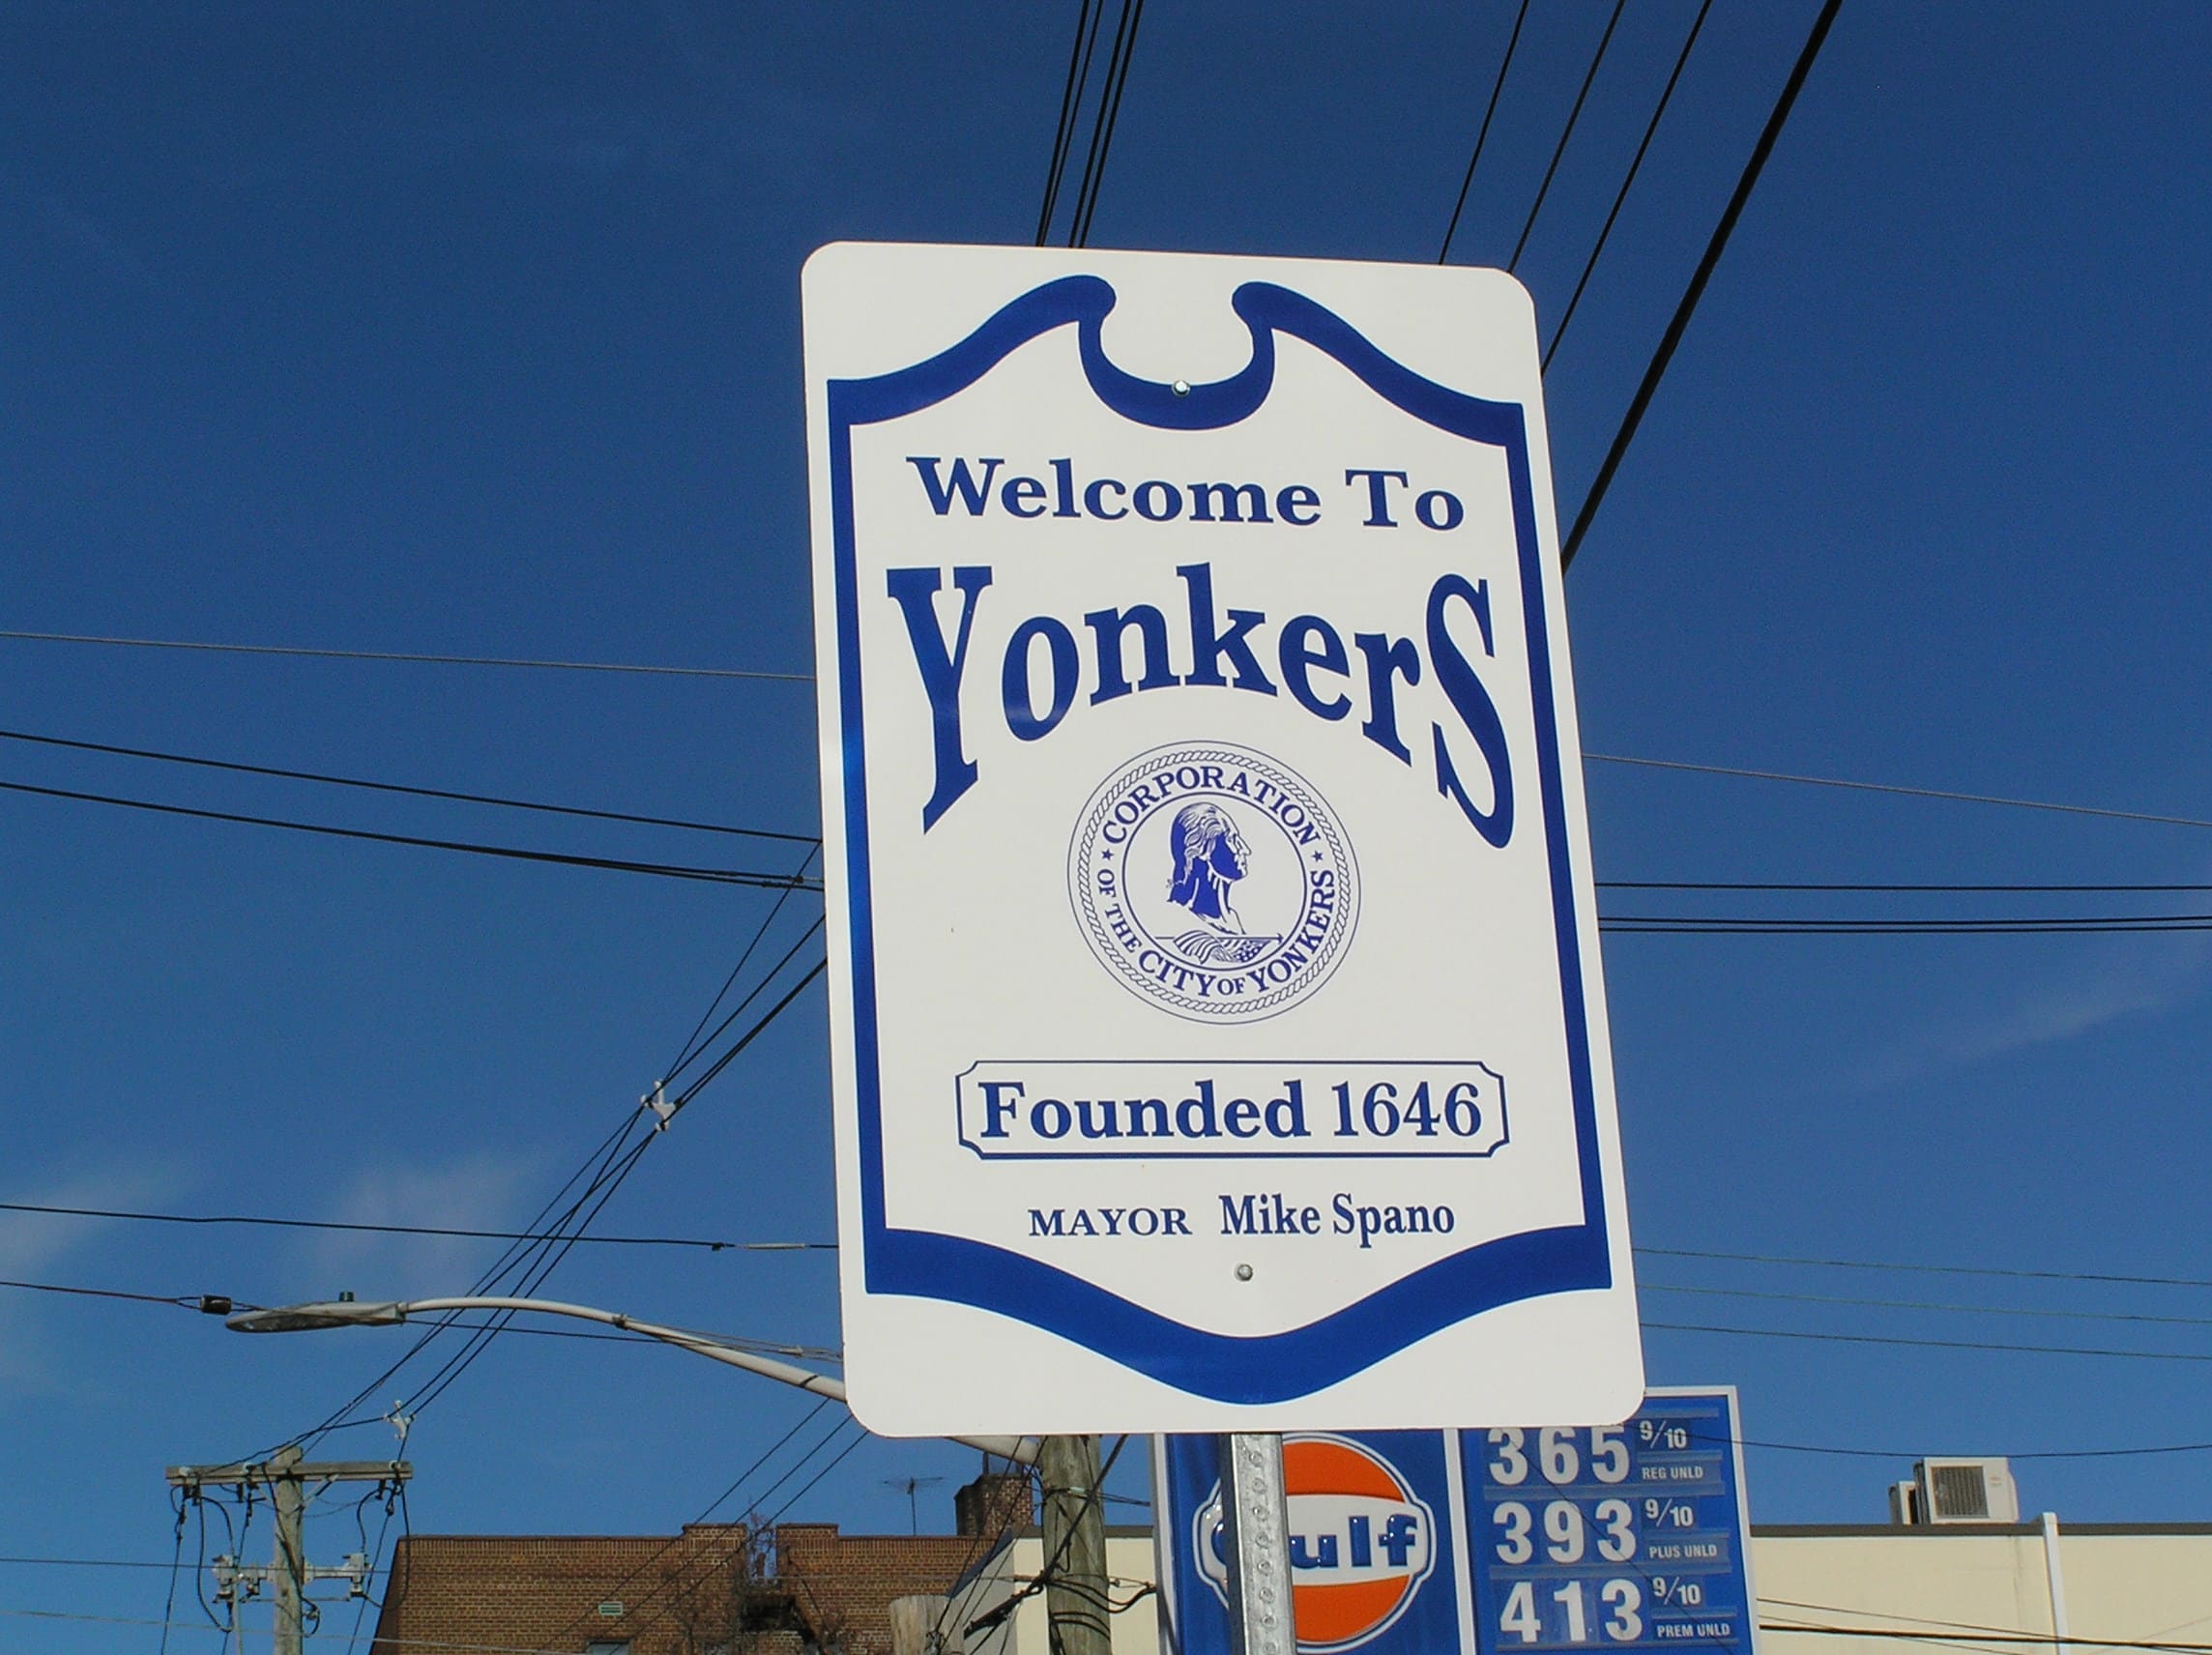 Yonkers plumbing company